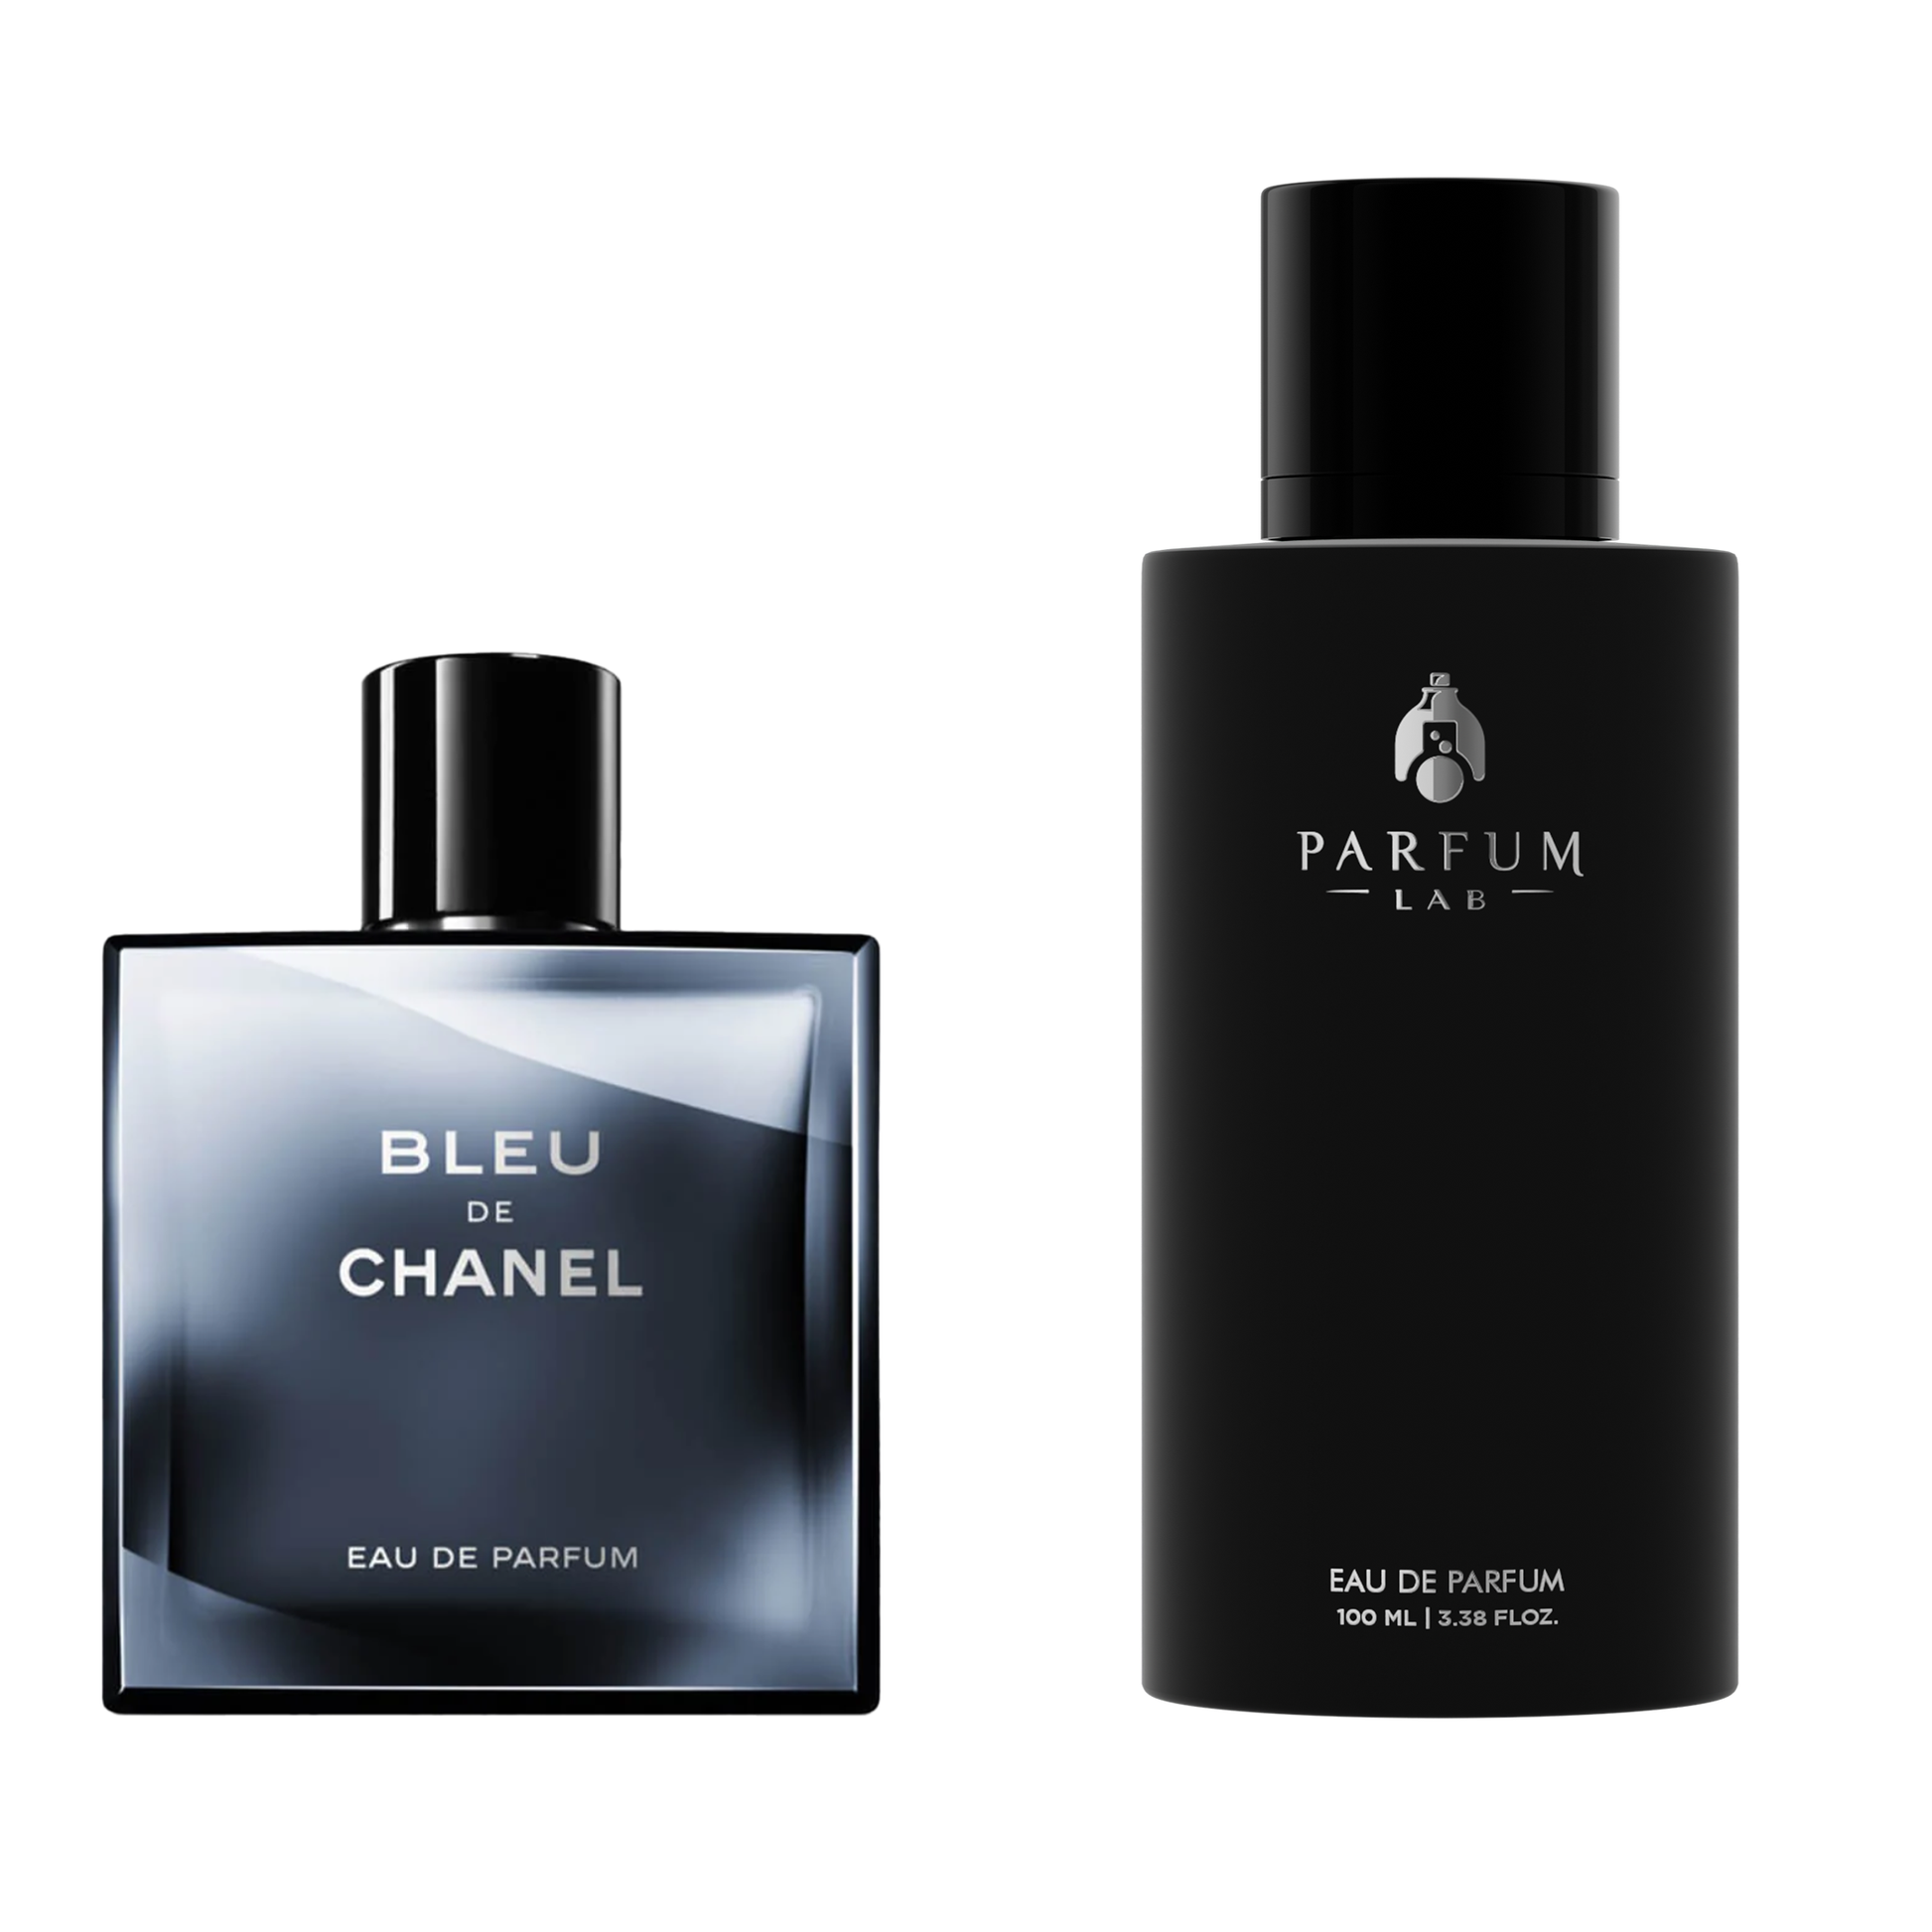 Bleu De Chanel – Parfum Lab Store